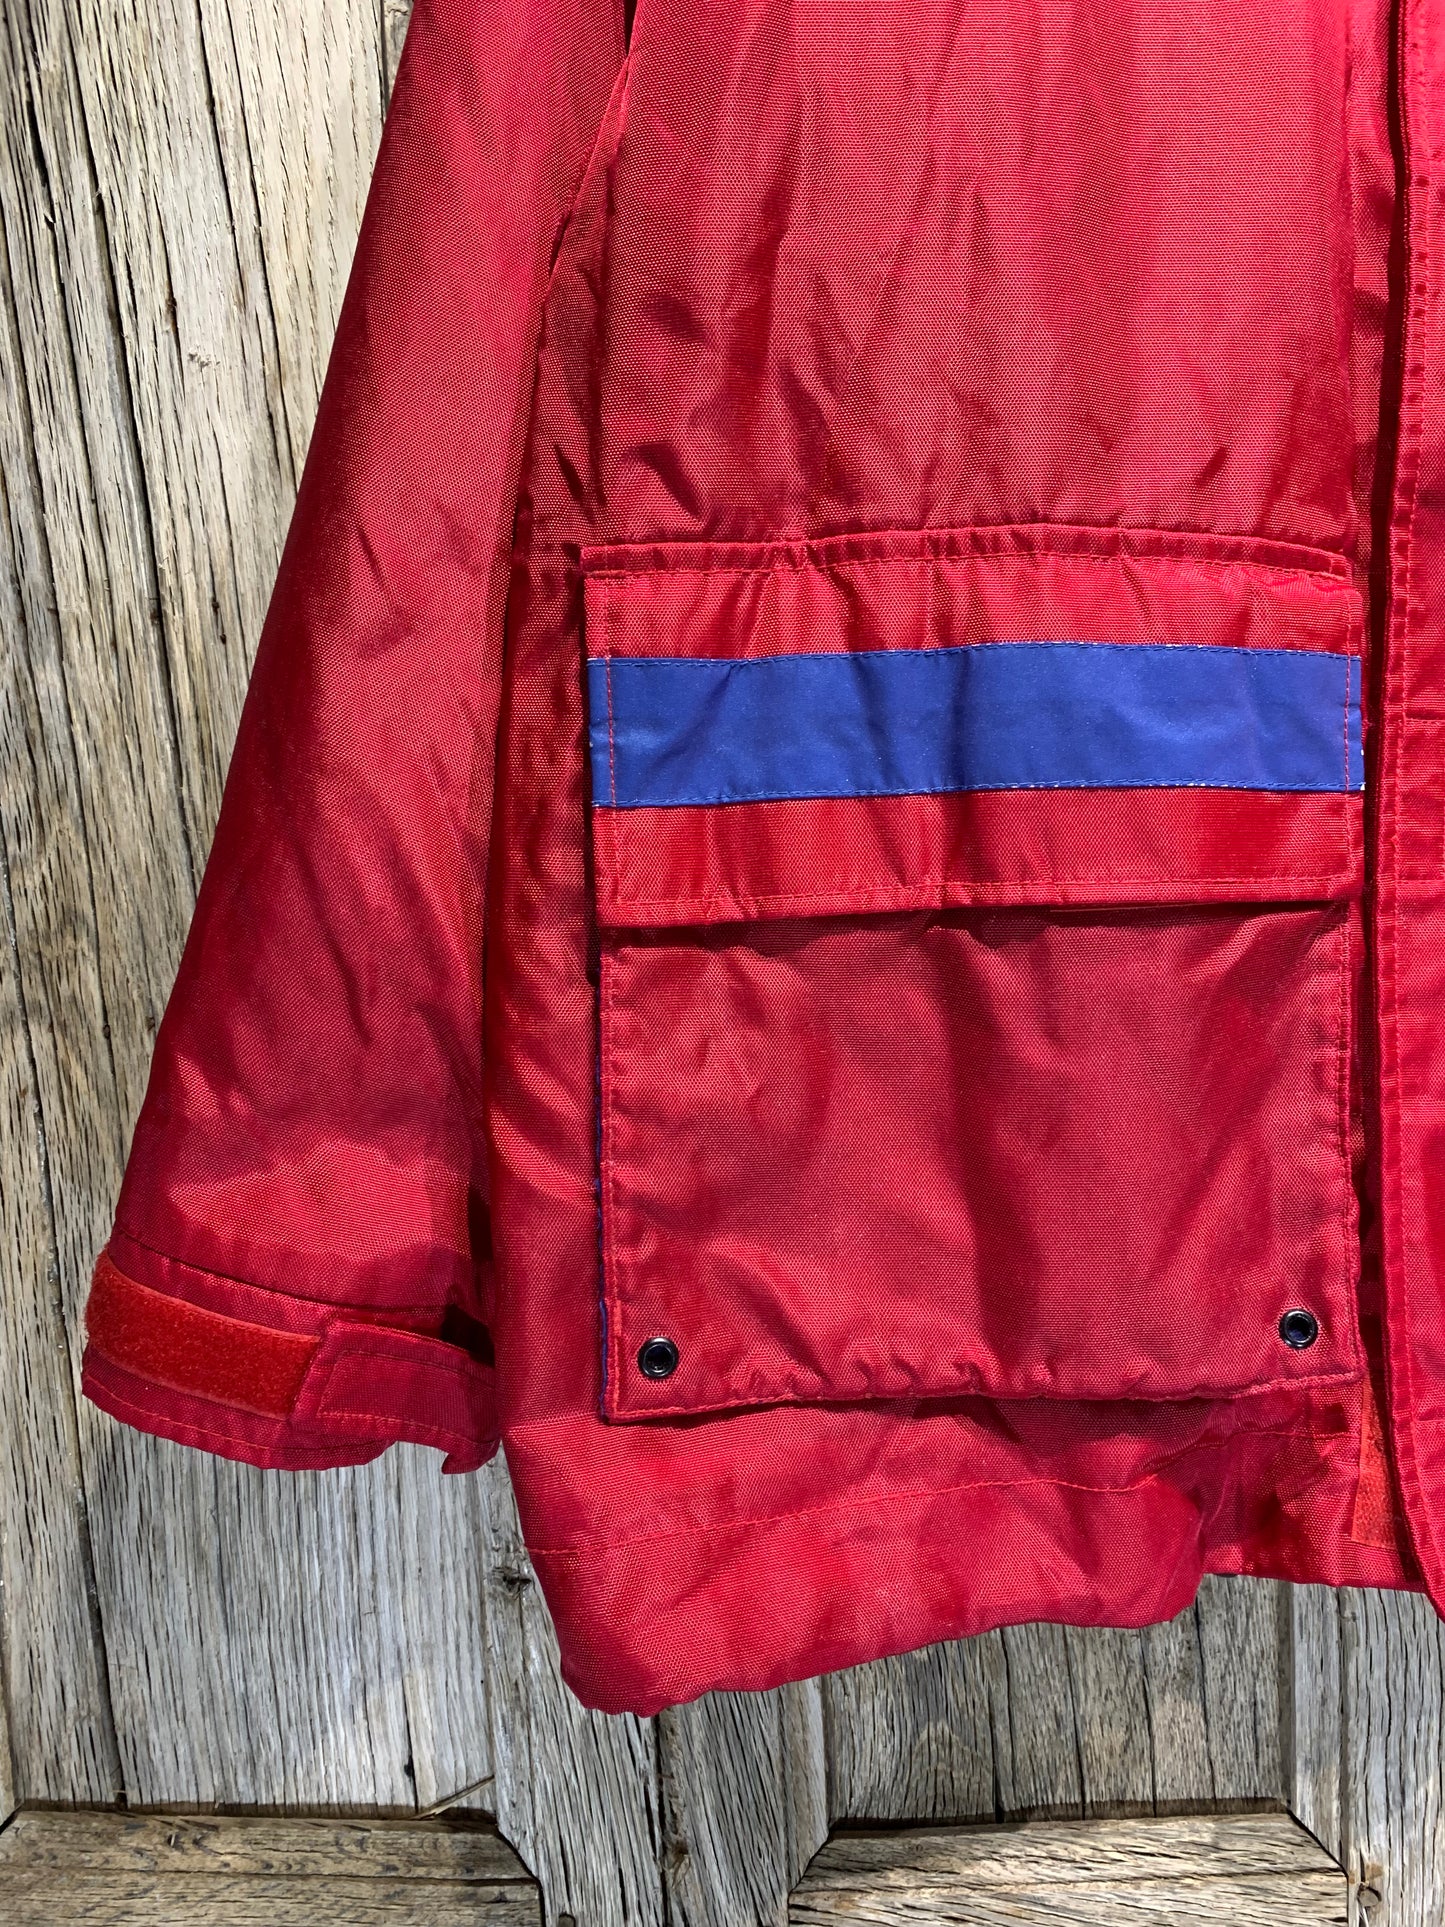 Tommy Hilfiger Red Vintage Jacket